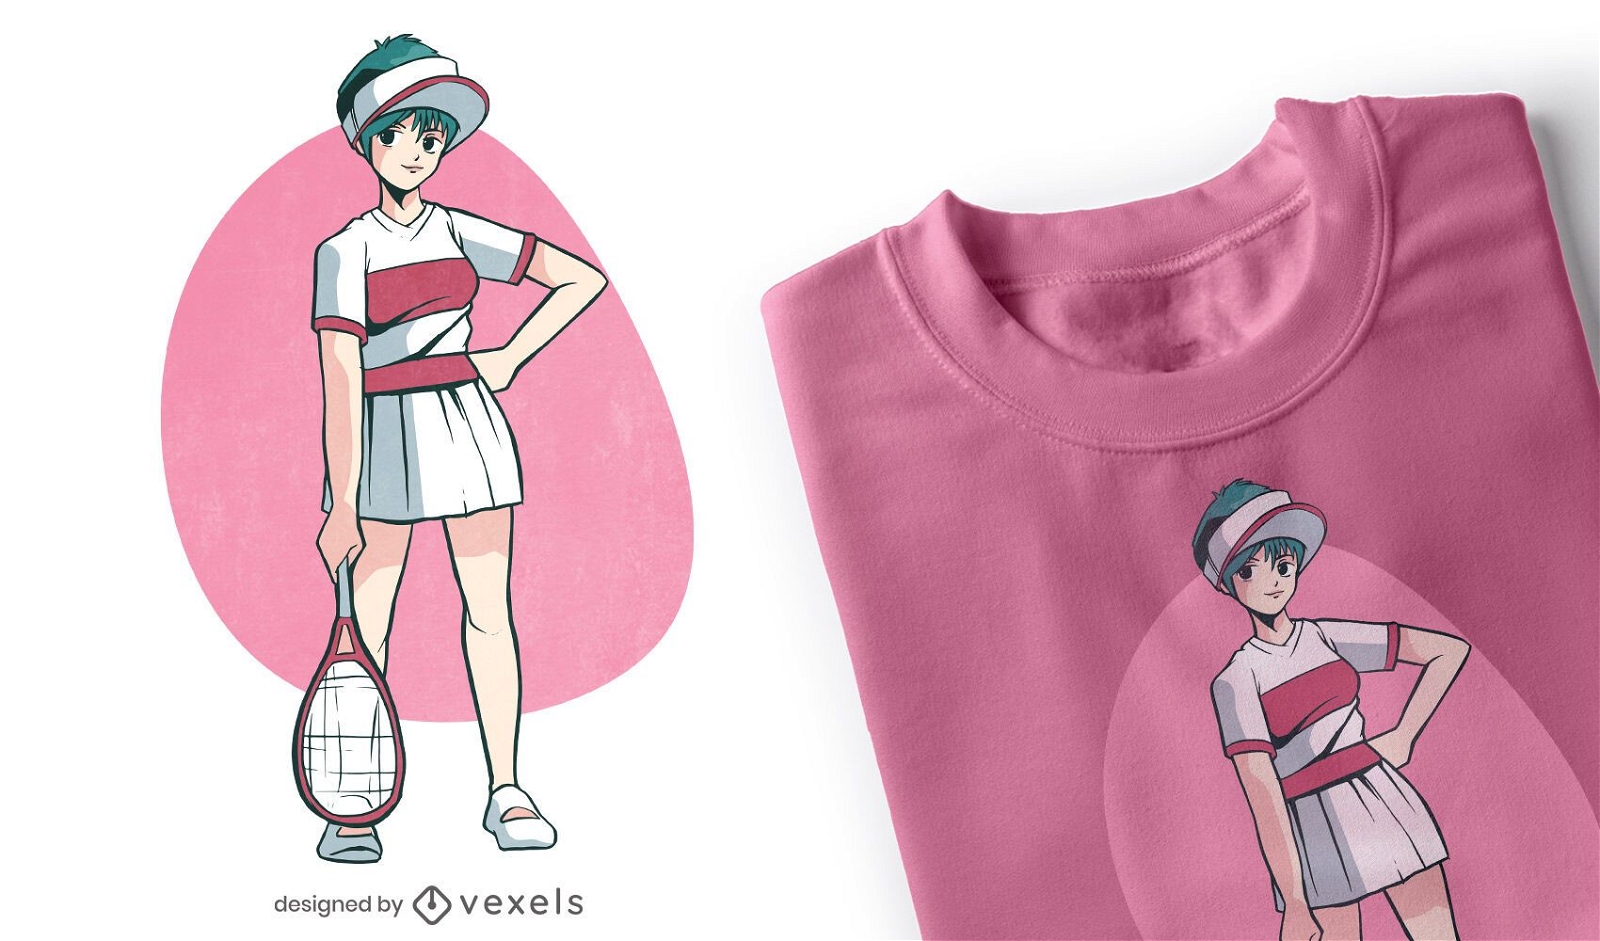 Dise?o de camiseta de personaje de anime tennis girl.